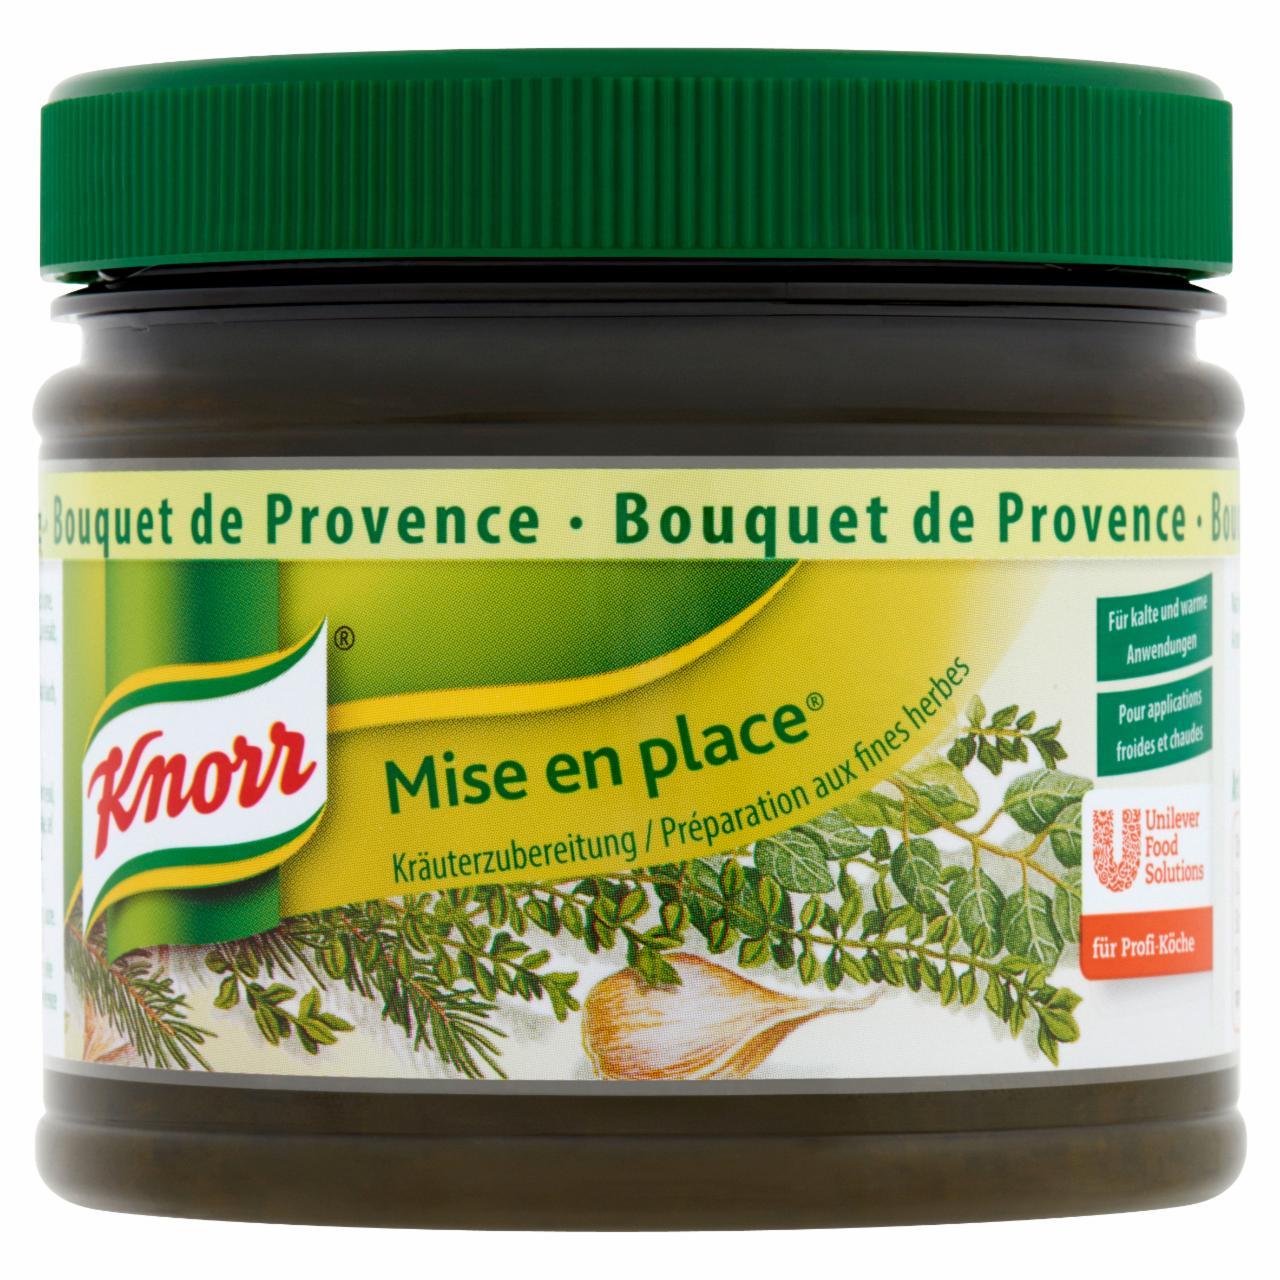 Képek - Knorr Primerba provanszi fűszerkeverék növényi olajban 340 g